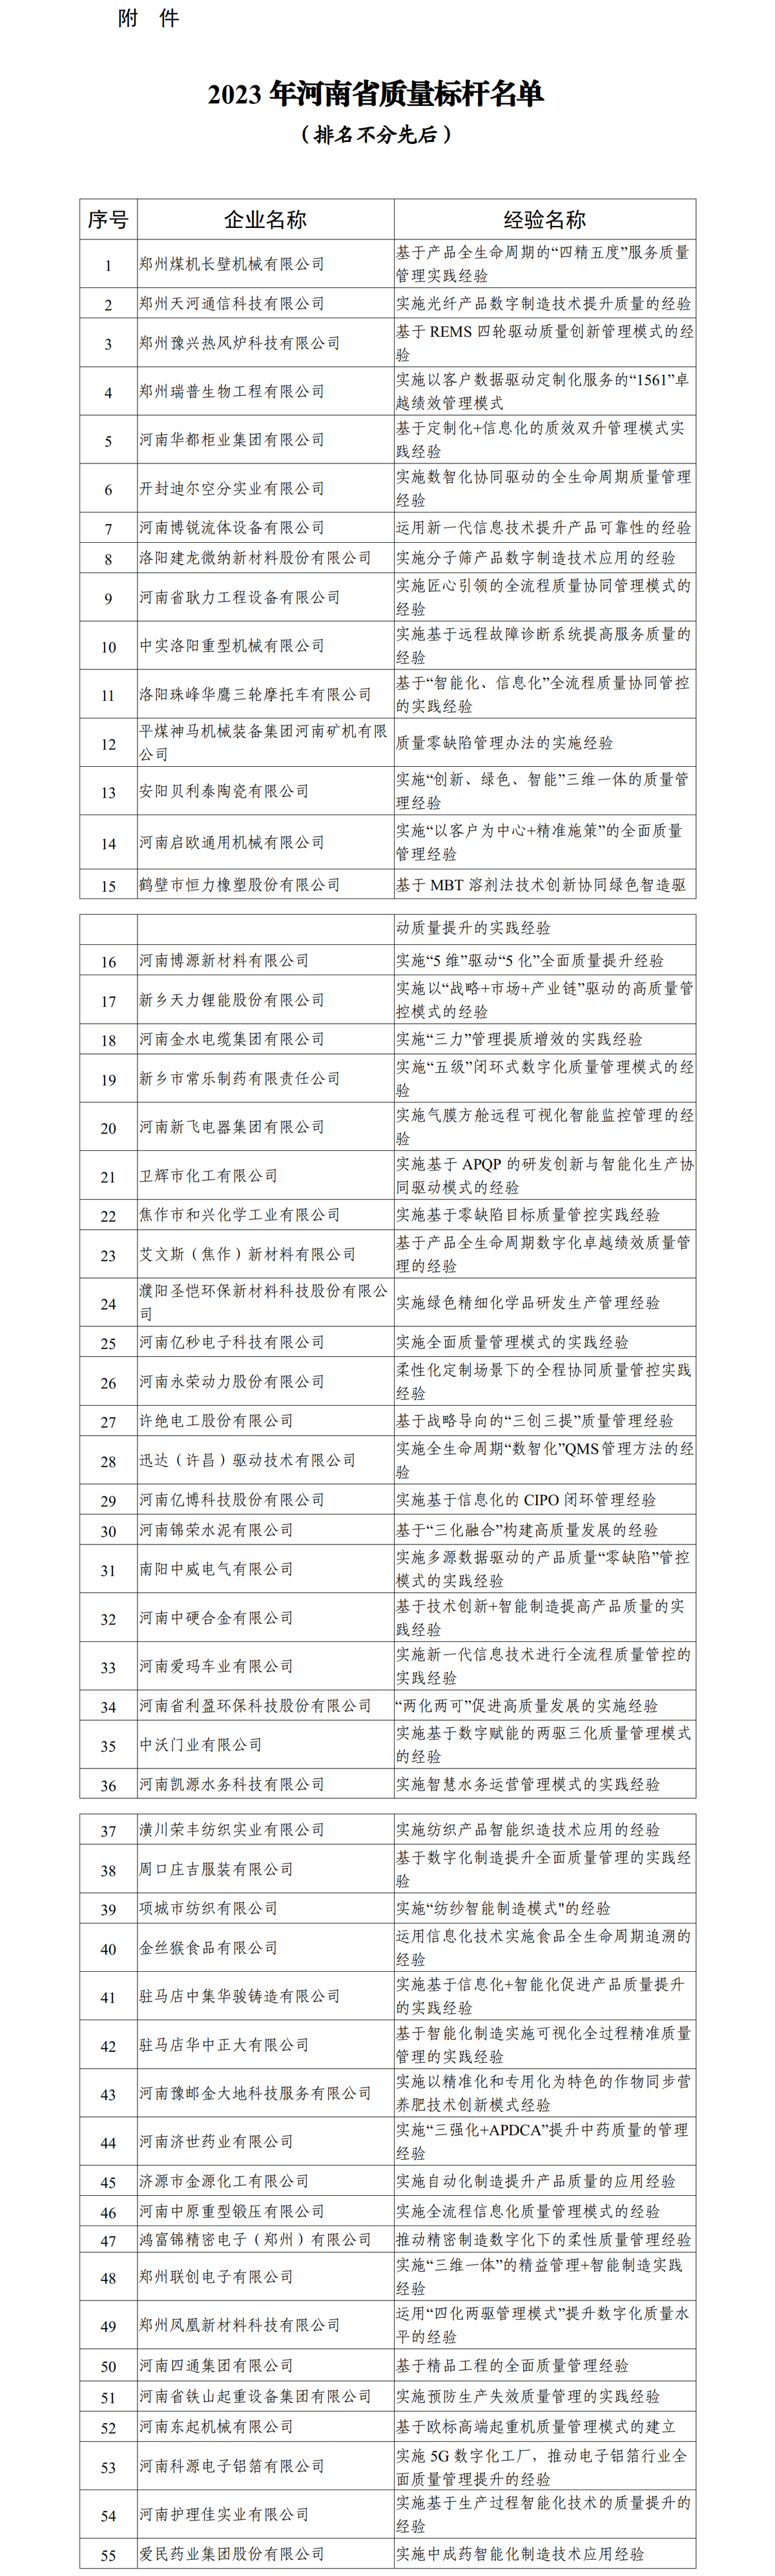 河南省工业和信息化厅 关于公布2023年河南省质量标杆名单的通知